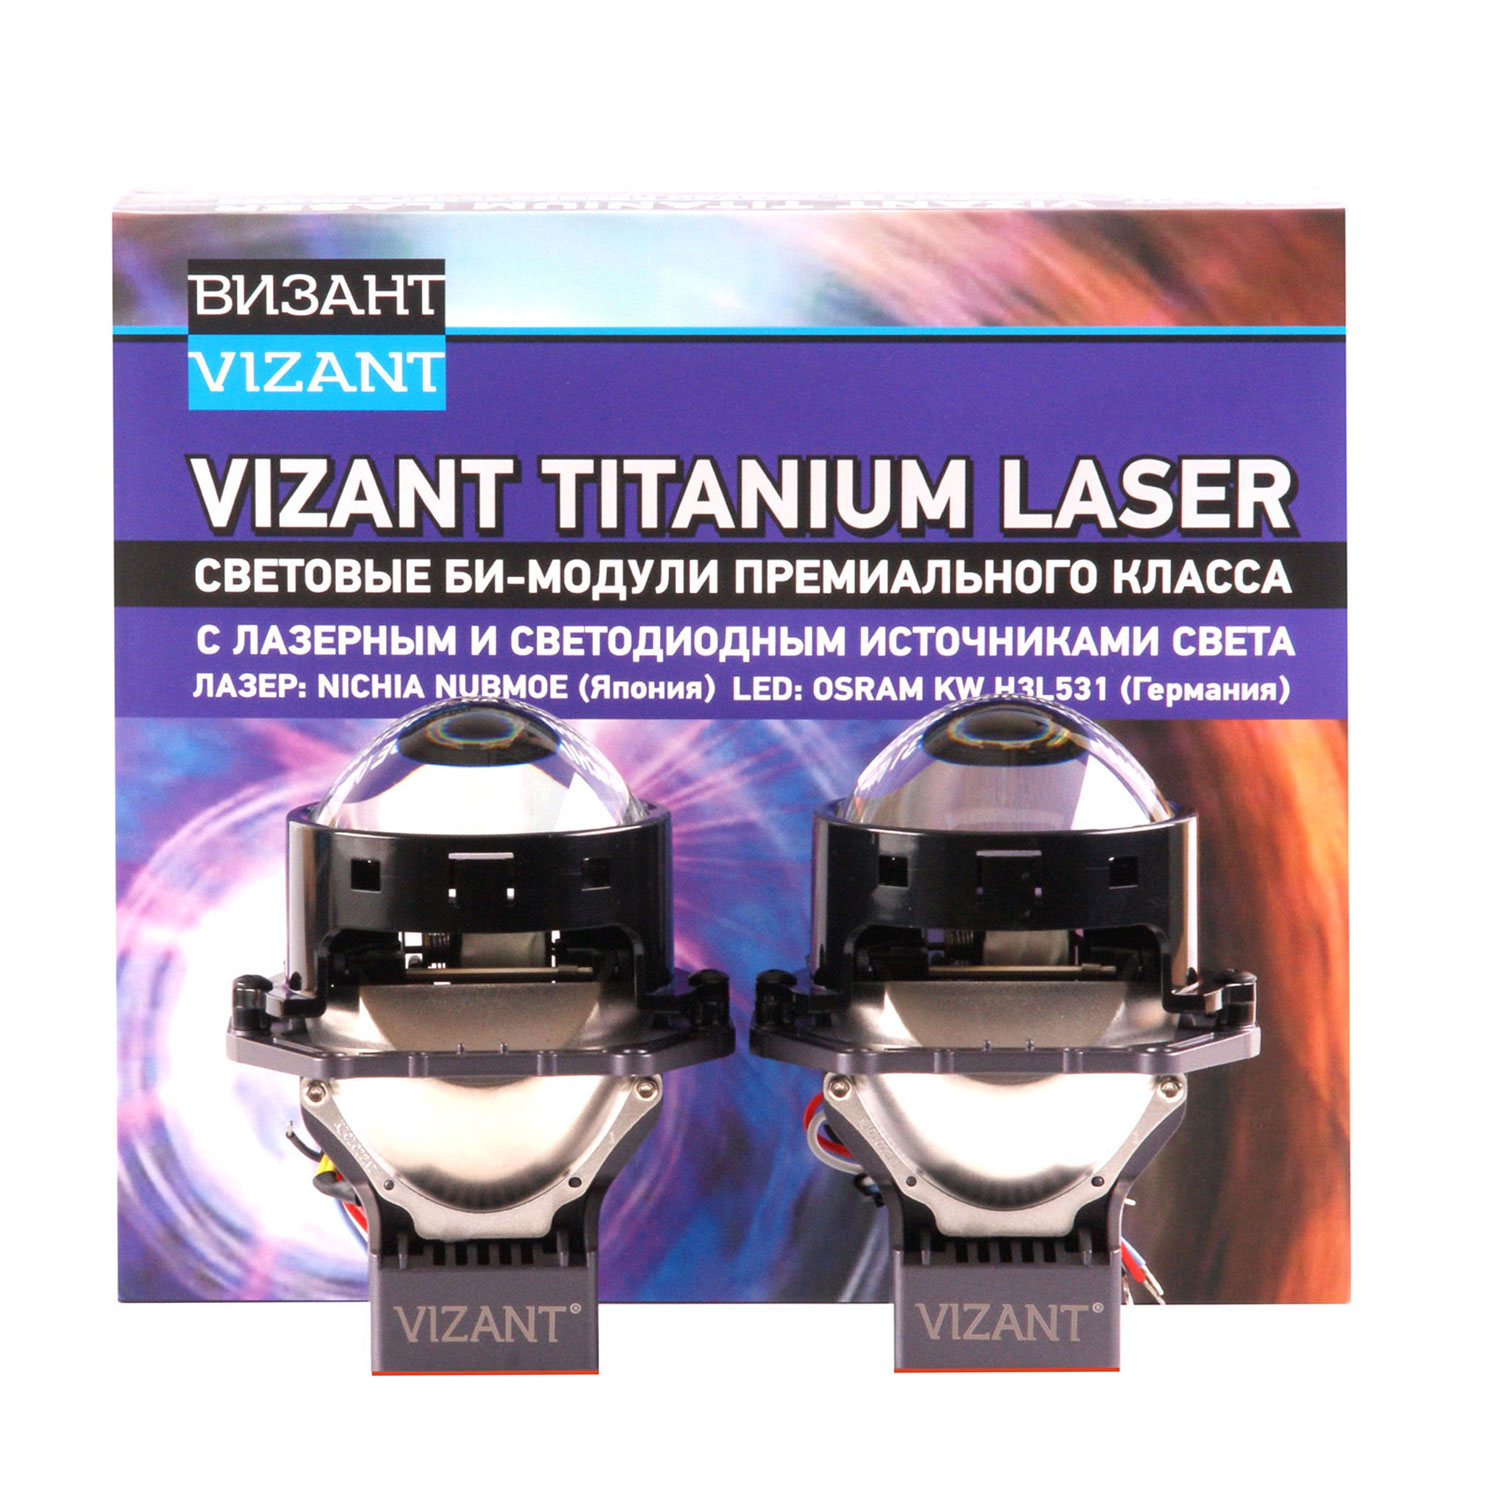 Светодиодные би-модули линзы Vizant TITANIUM LAZER с лазерным и светодиодным ист. света